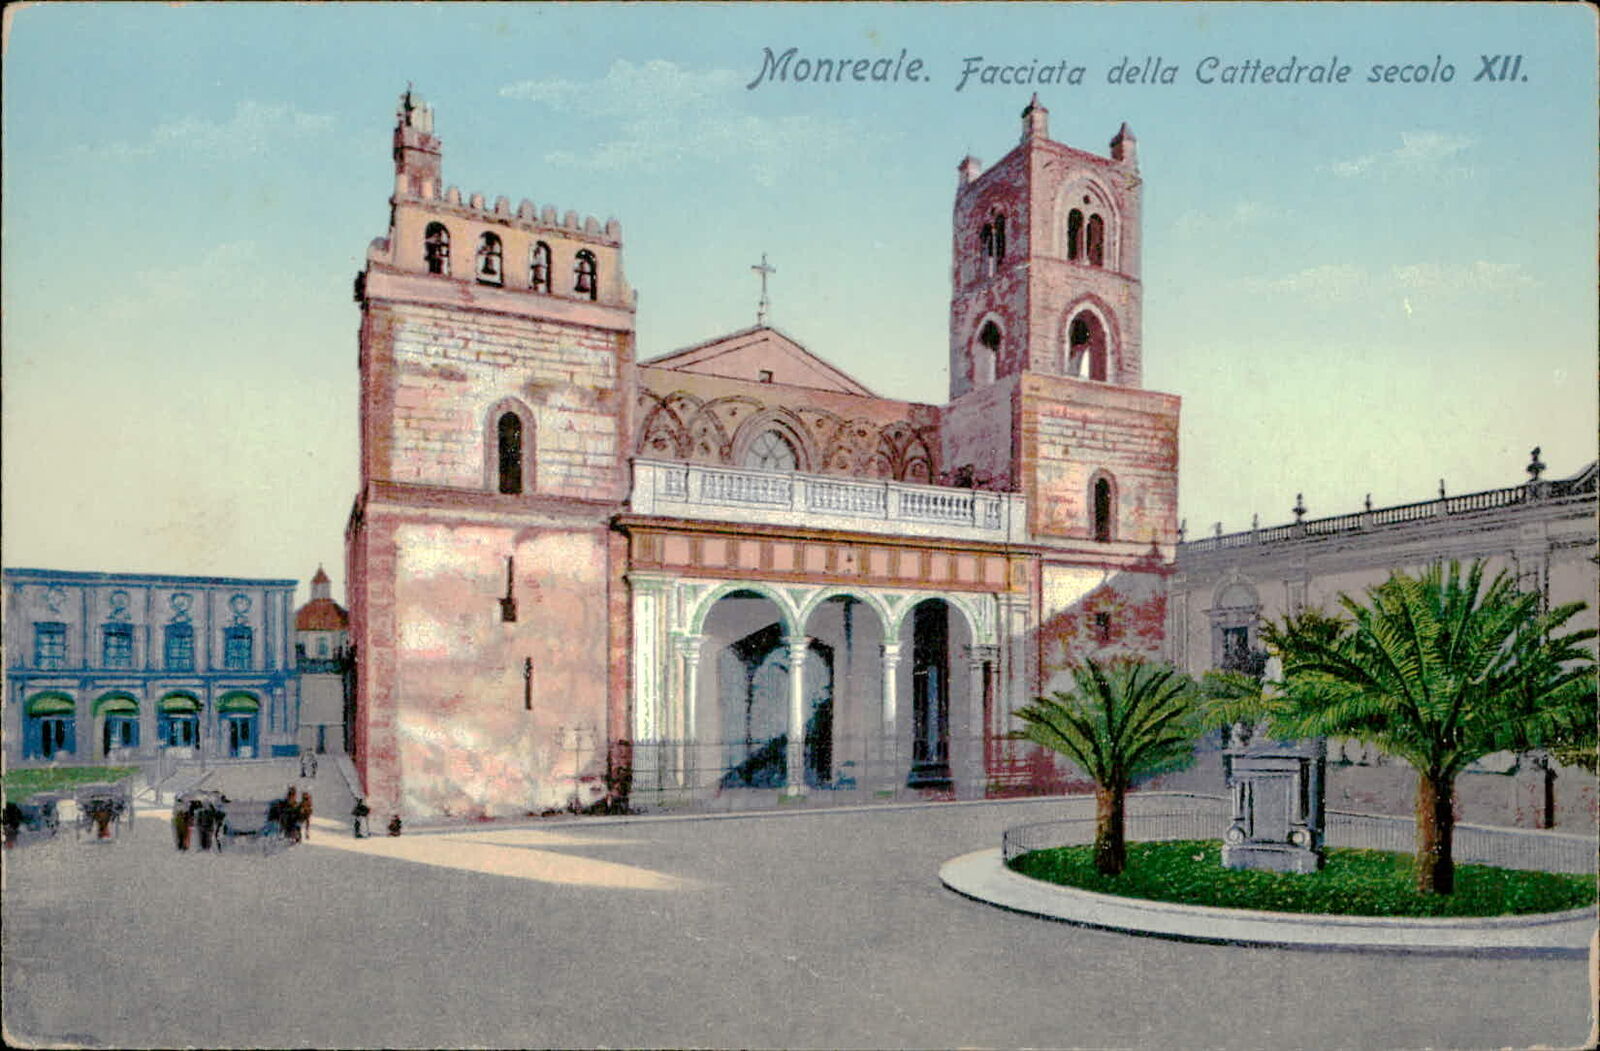 Postcard: AAA Monreale. Facciata della Cattedrale secolo XII.